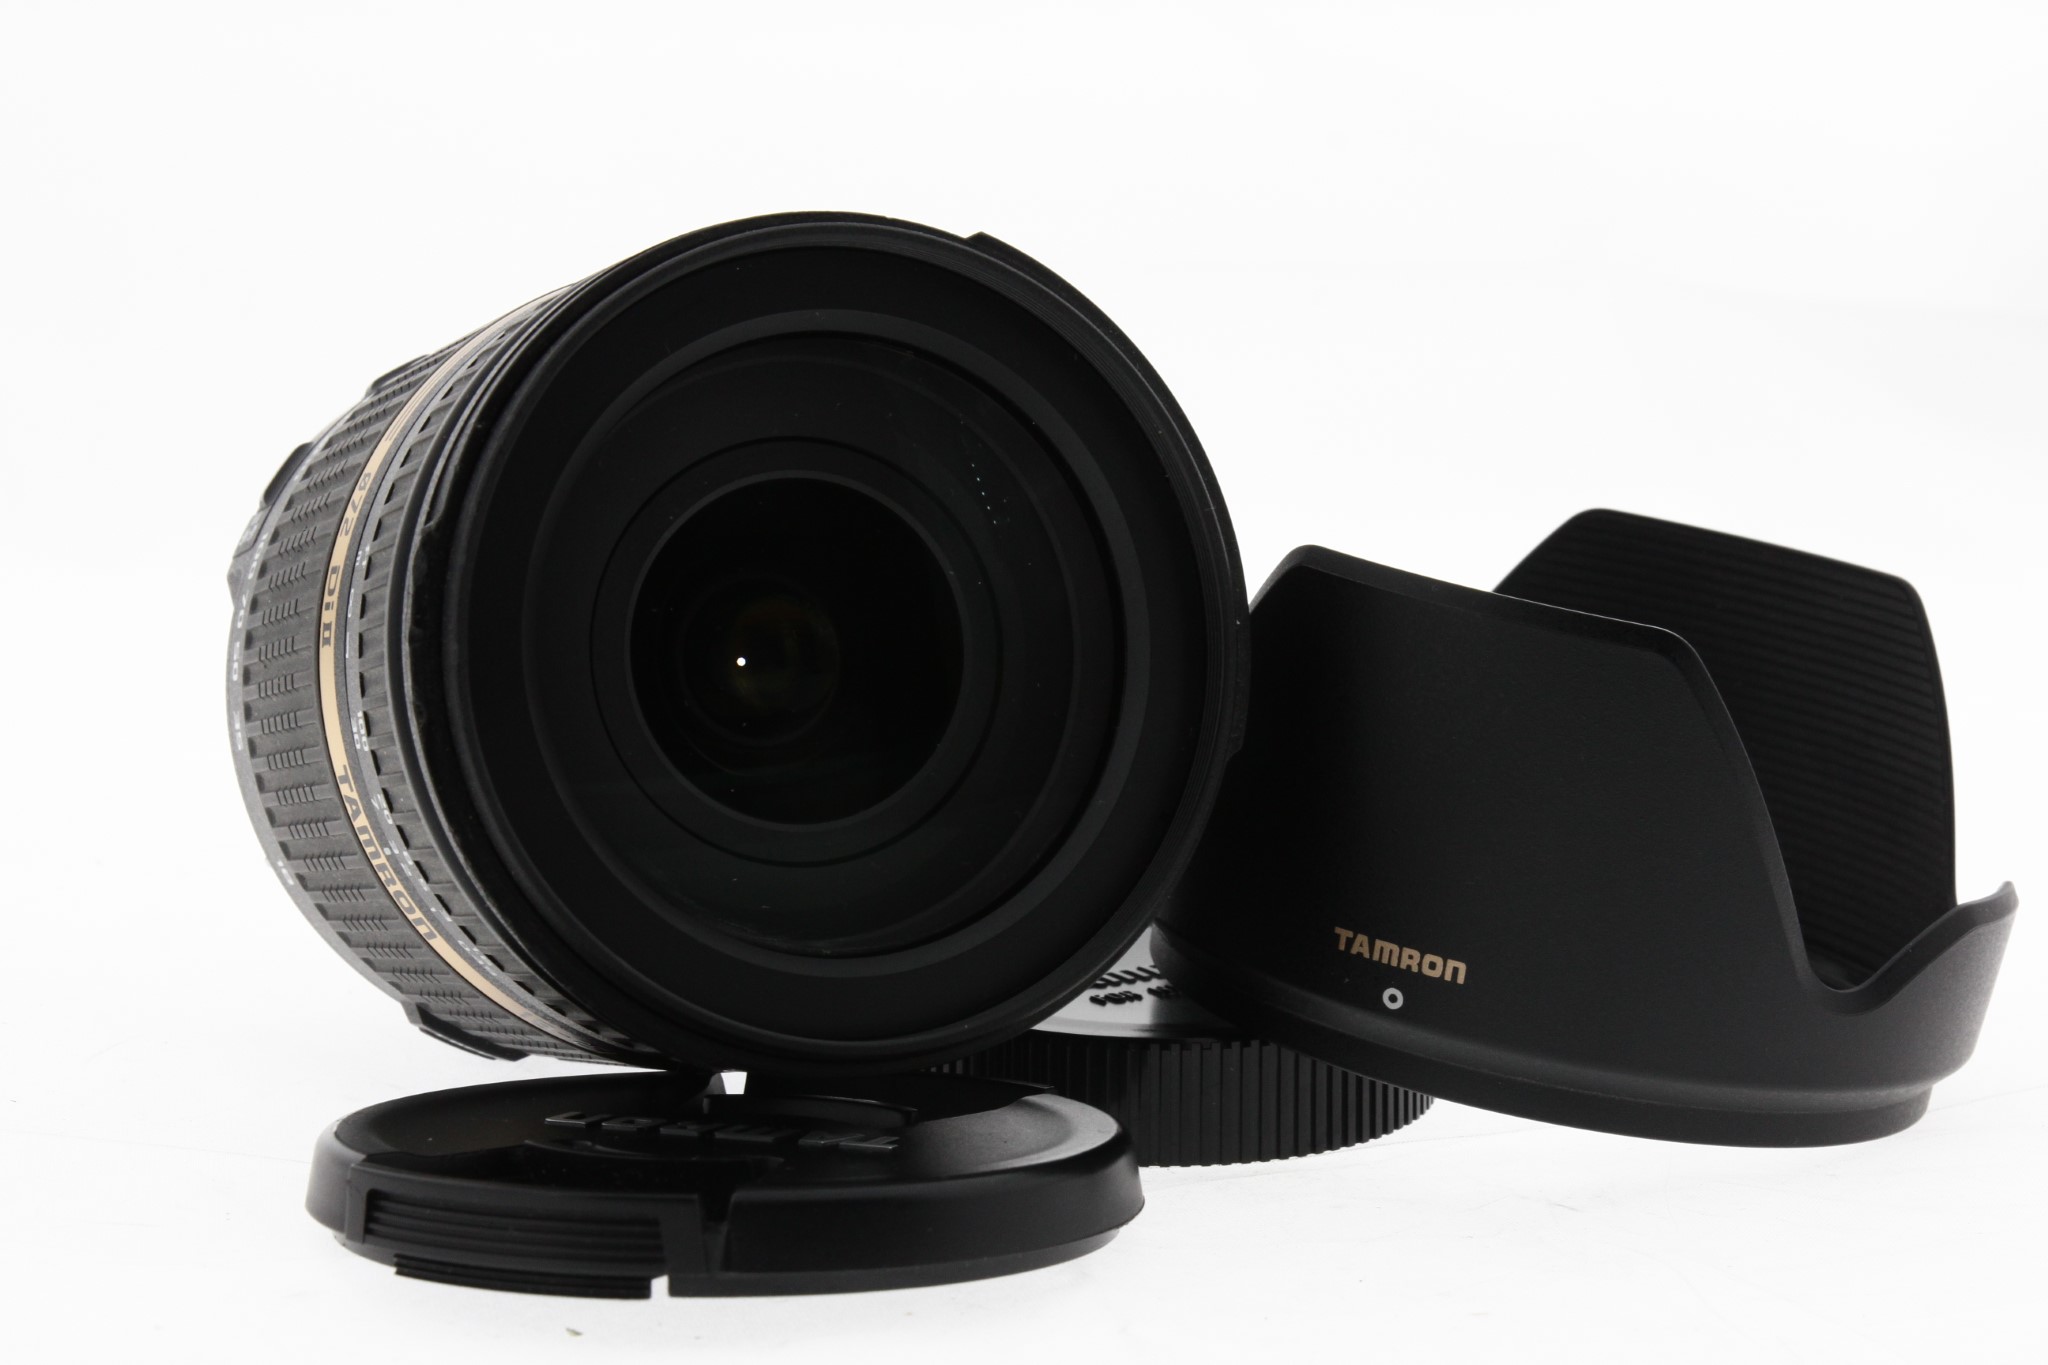 Tamron 18-270mm f/3.5-6.3 Di II VC pro Nikon